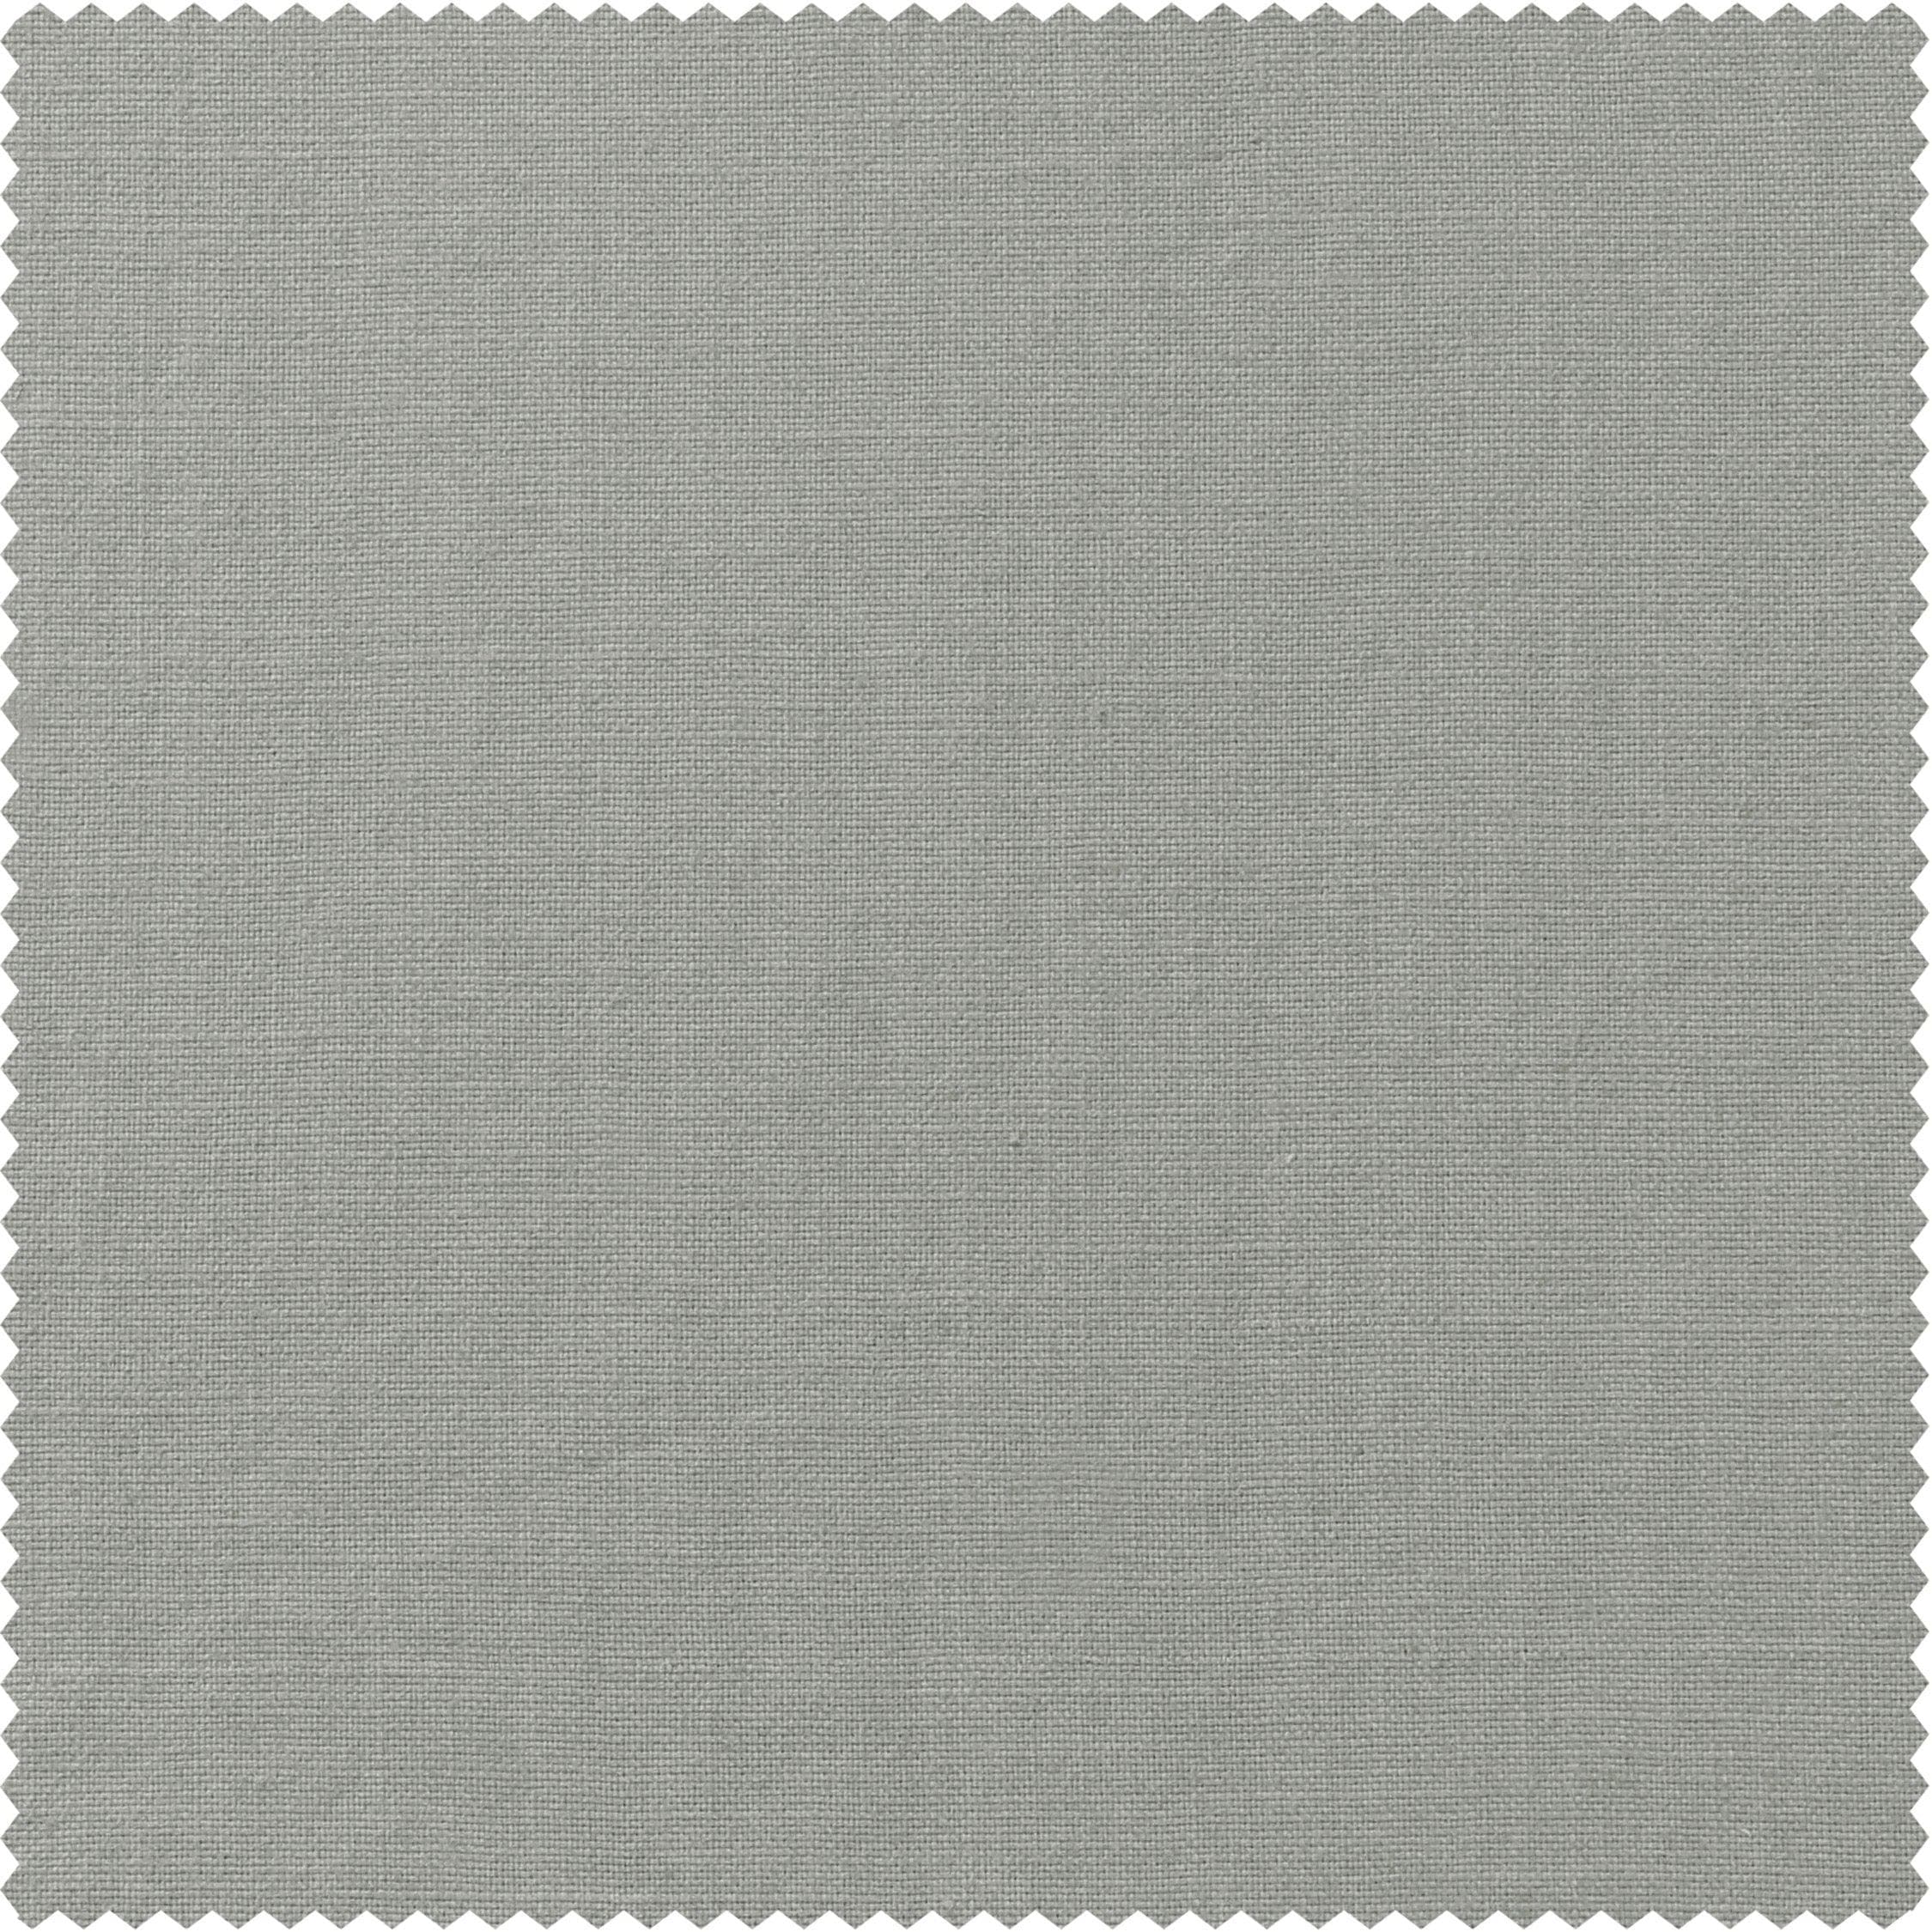 Mist Grey Textured Cotton Linen Weave Swatch